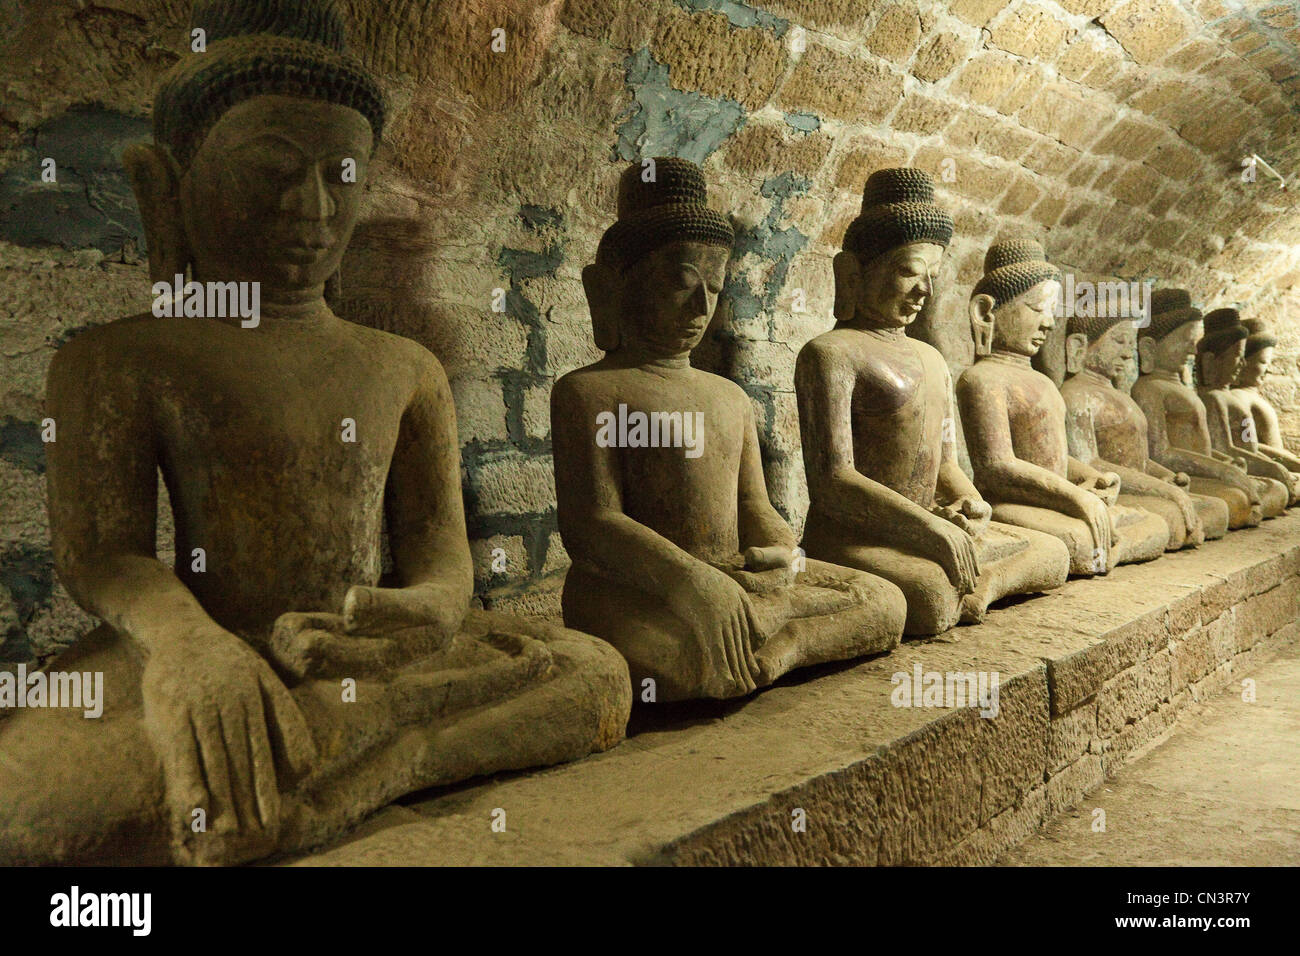 Myanmar (Burma), Rakhine (Arakan) state, Mrauk U, buddha statues in Shitthaung pagoda Stock Photo